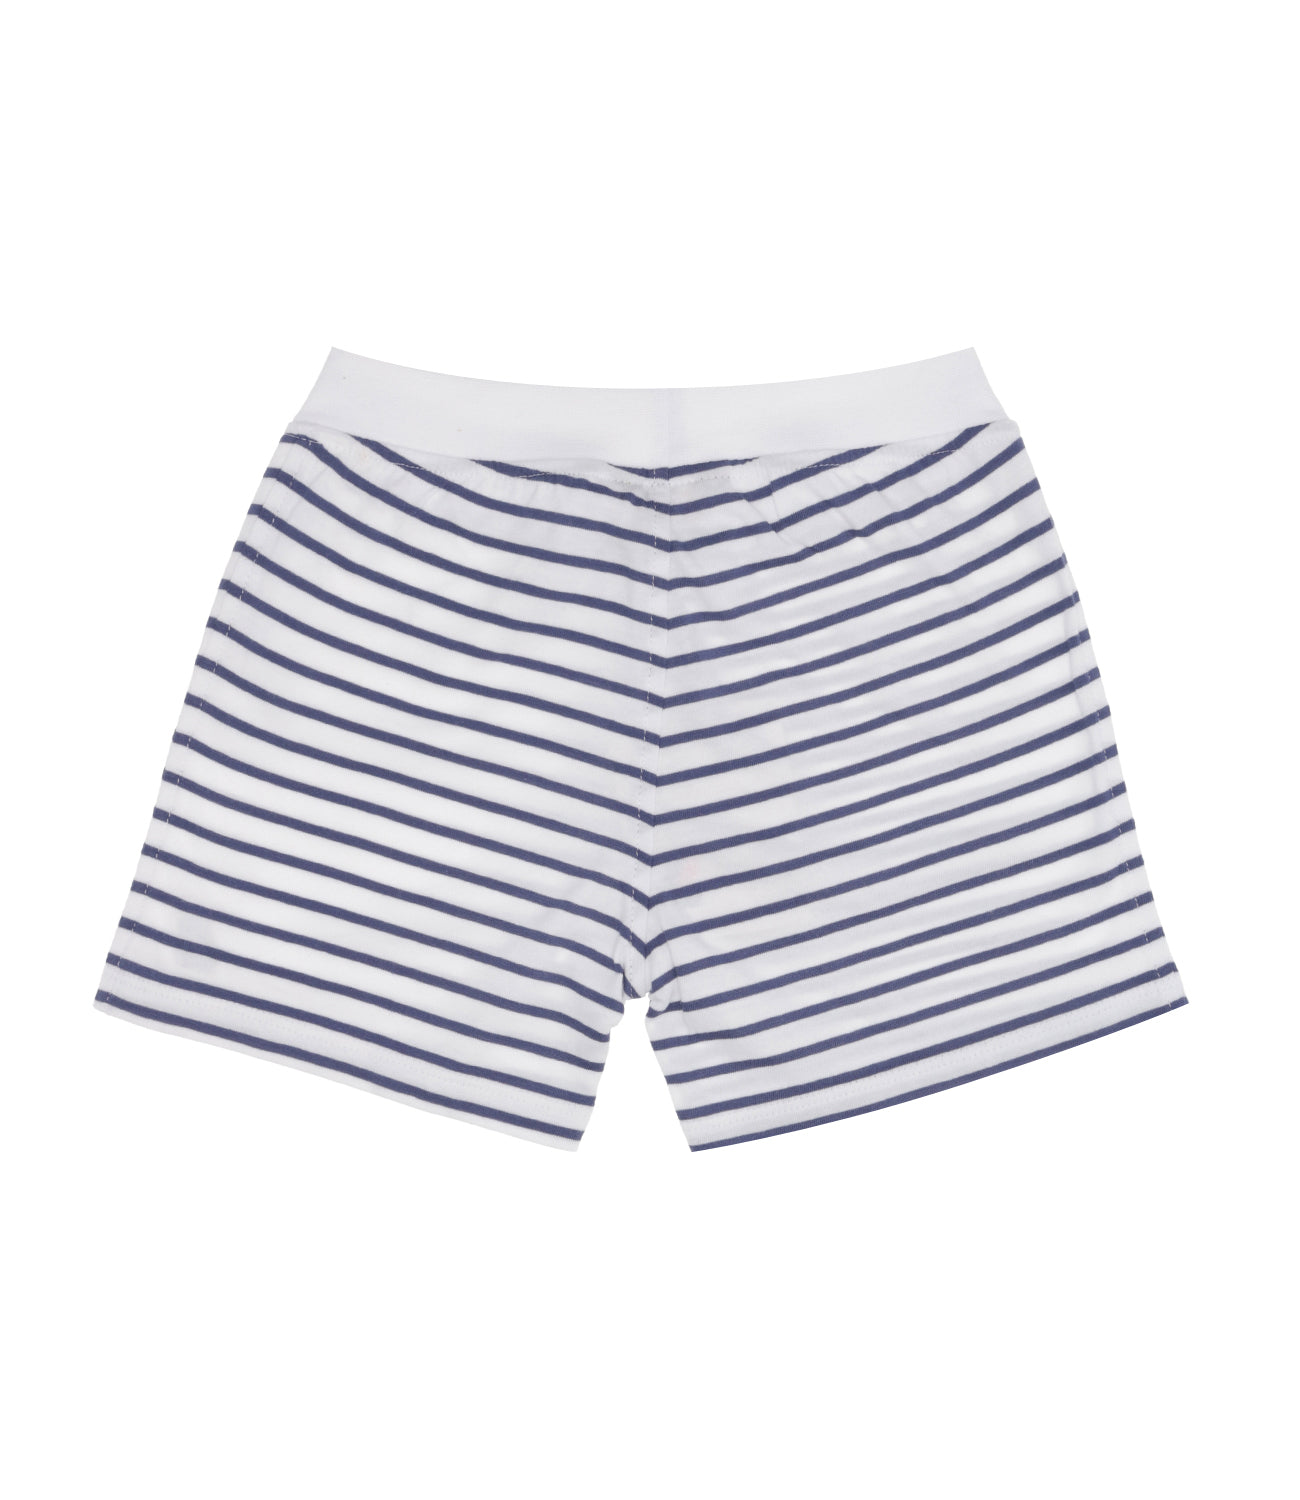 K-Way Kids | Shorts E. Noisette Stripes White and Blue